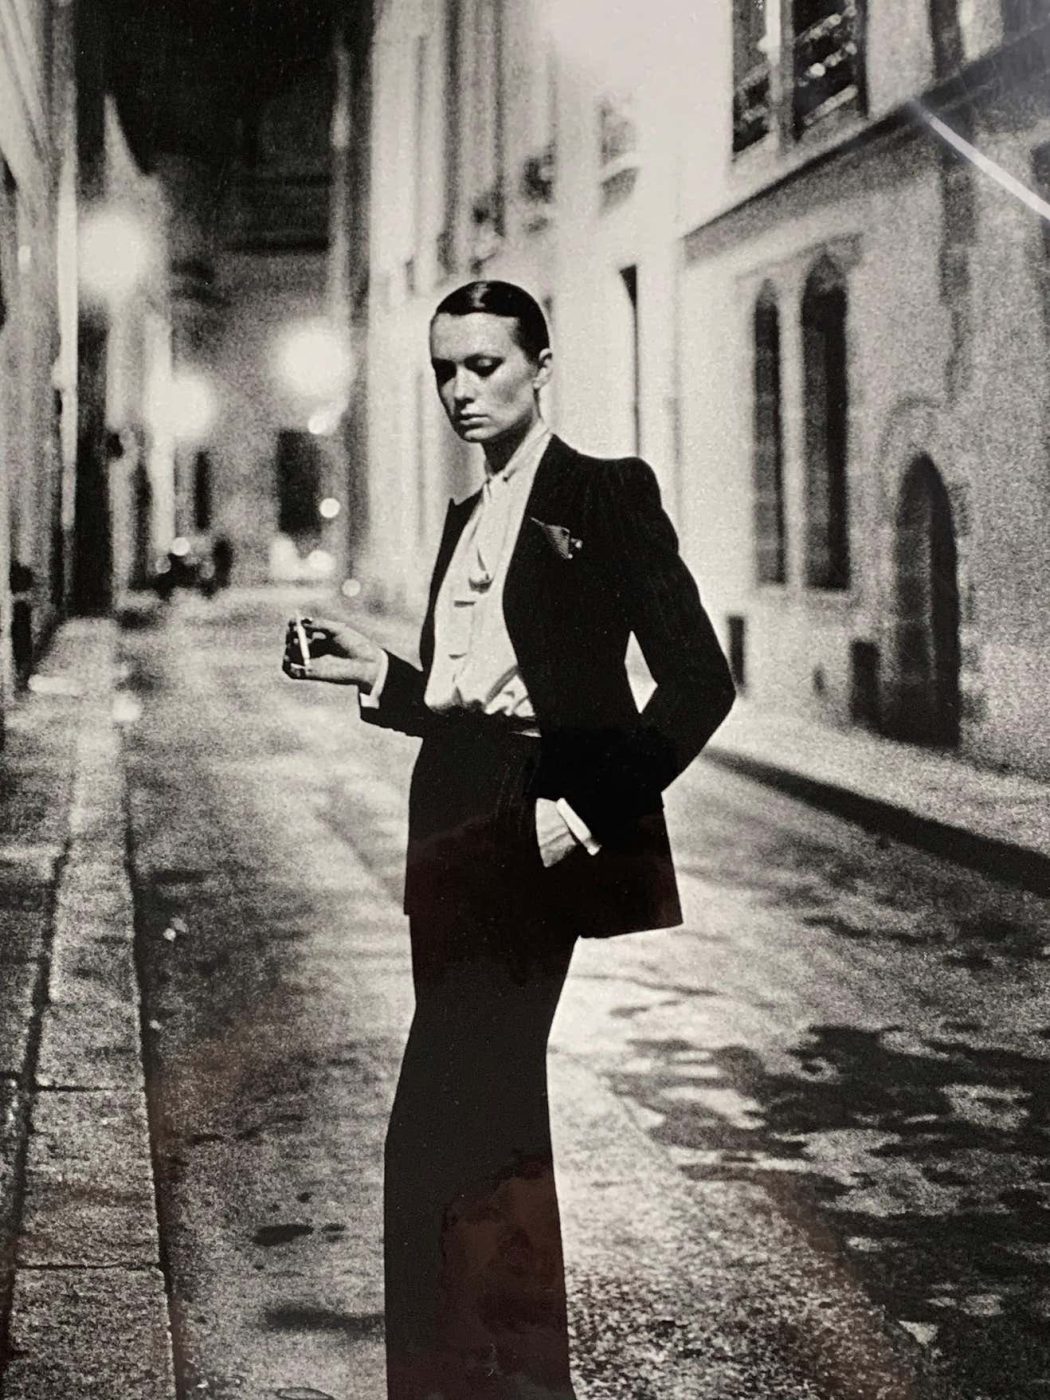 A model wears YVES SAINT LAURENT’s Le Smoking suit in HELMUT NEWTON’s 1975 photo RUE AUBRIOT. 